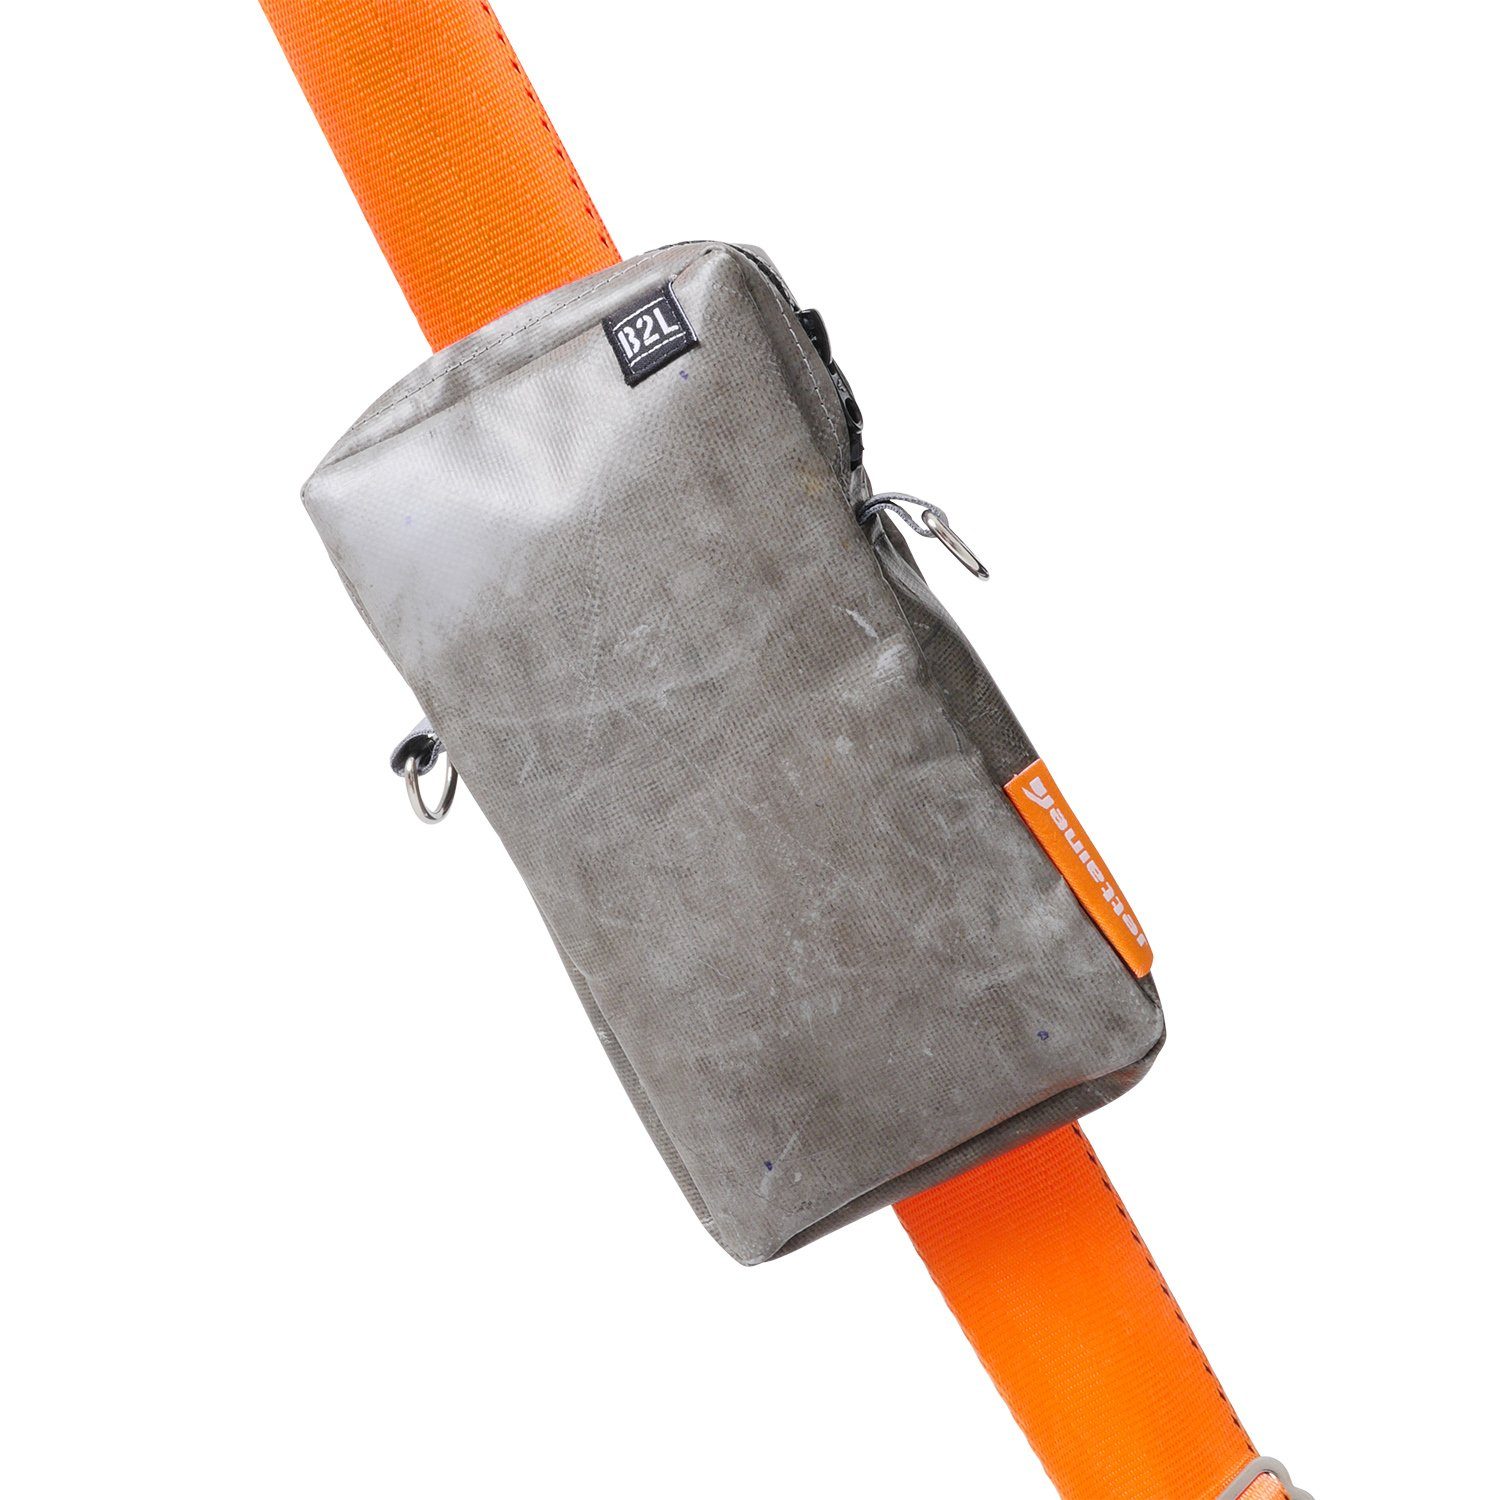 Bag to Life Umhängetasche praktischen ULD im Design Jettainer Bag, Crossover